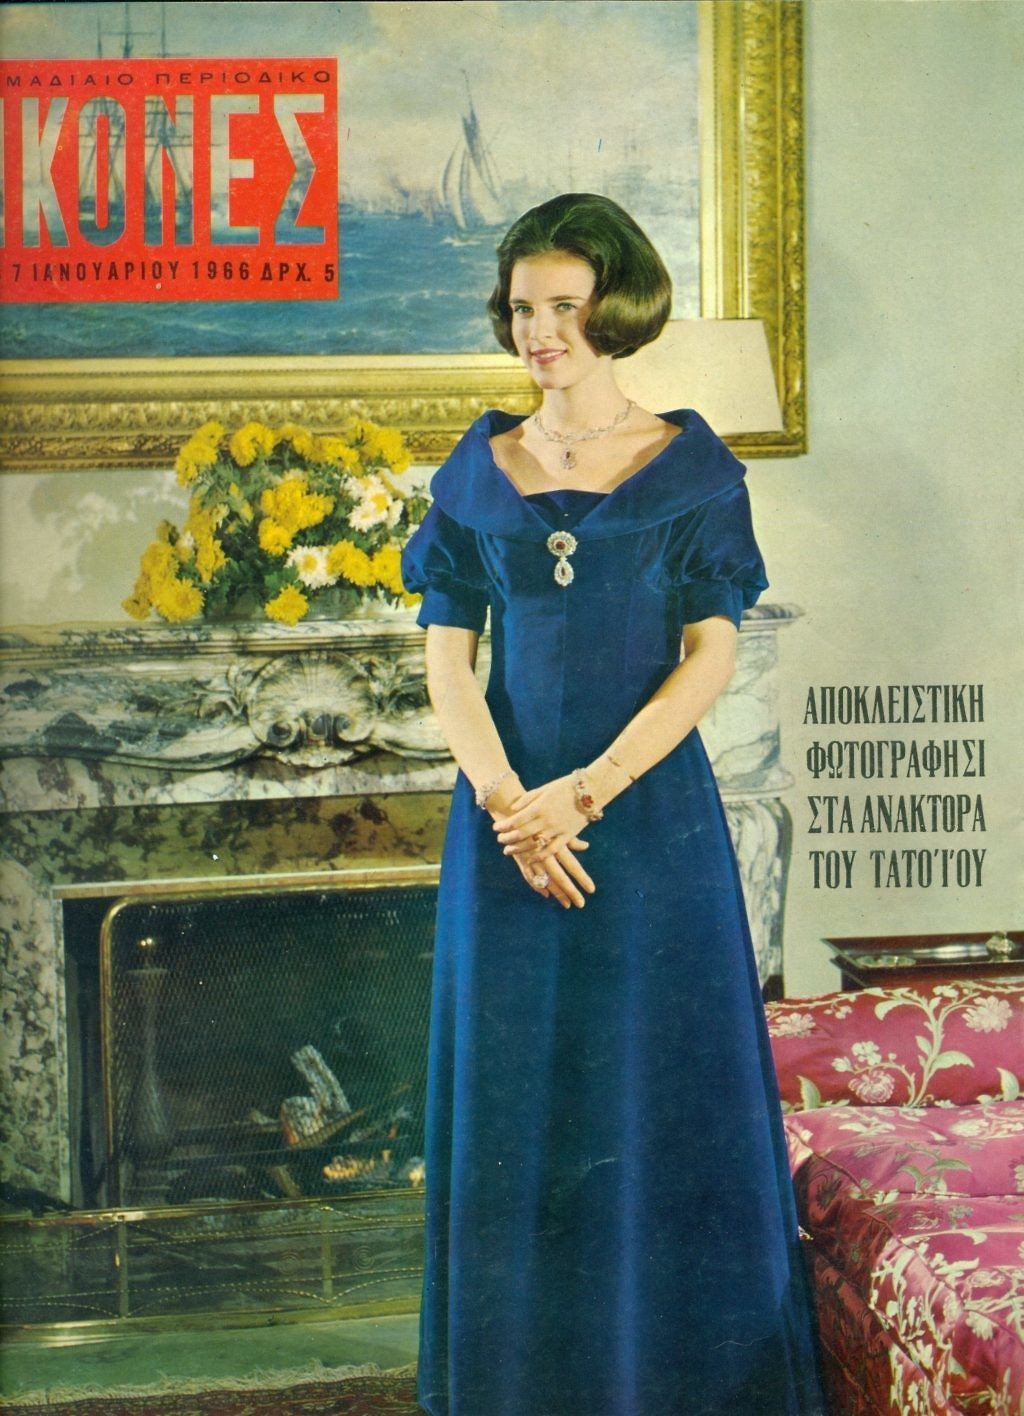 Η Άννα-Μαρία σε φωτογράφηση στο Τατόι για το περιοδικό «Εικόνες» το 1966